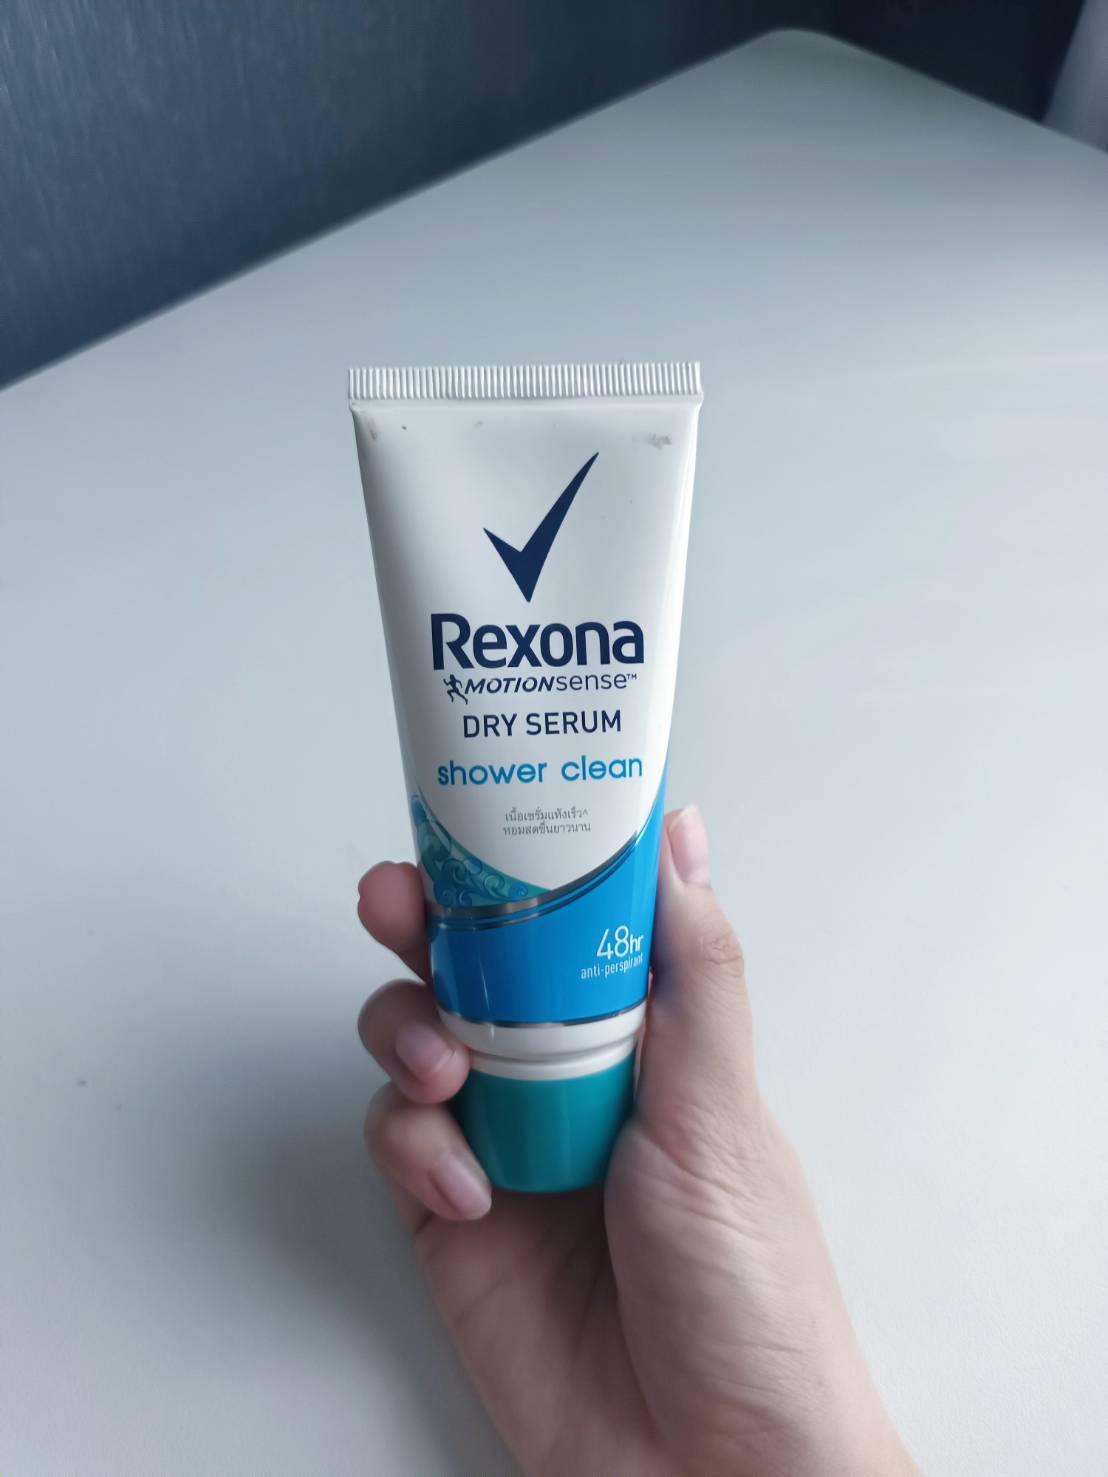 ภาพหน้าปก แชร์เซรั่ม Rexona Dry Serum Shower Clean ใช้แล้วดีจริง!! ที่:0